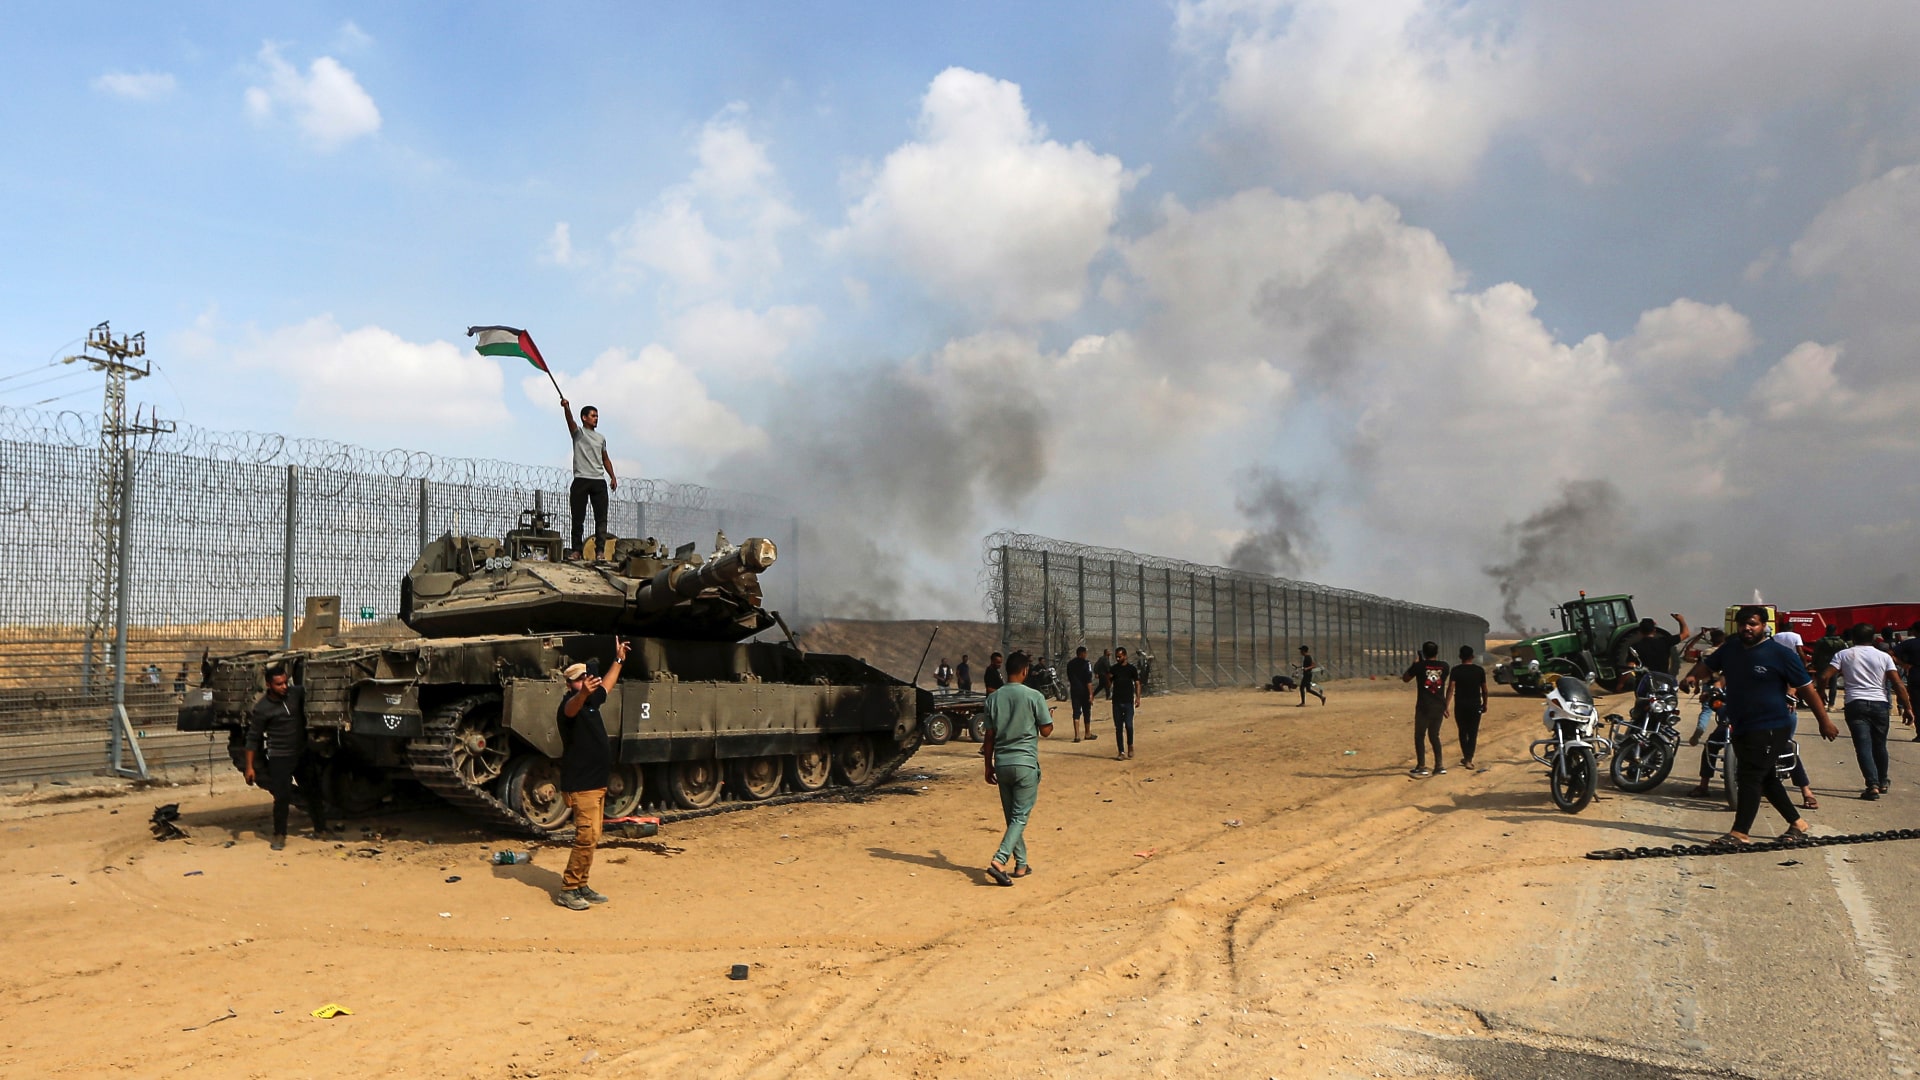 Hamas útok na Izrael. Palestínčania obsadili tank, vojna v Izraeli